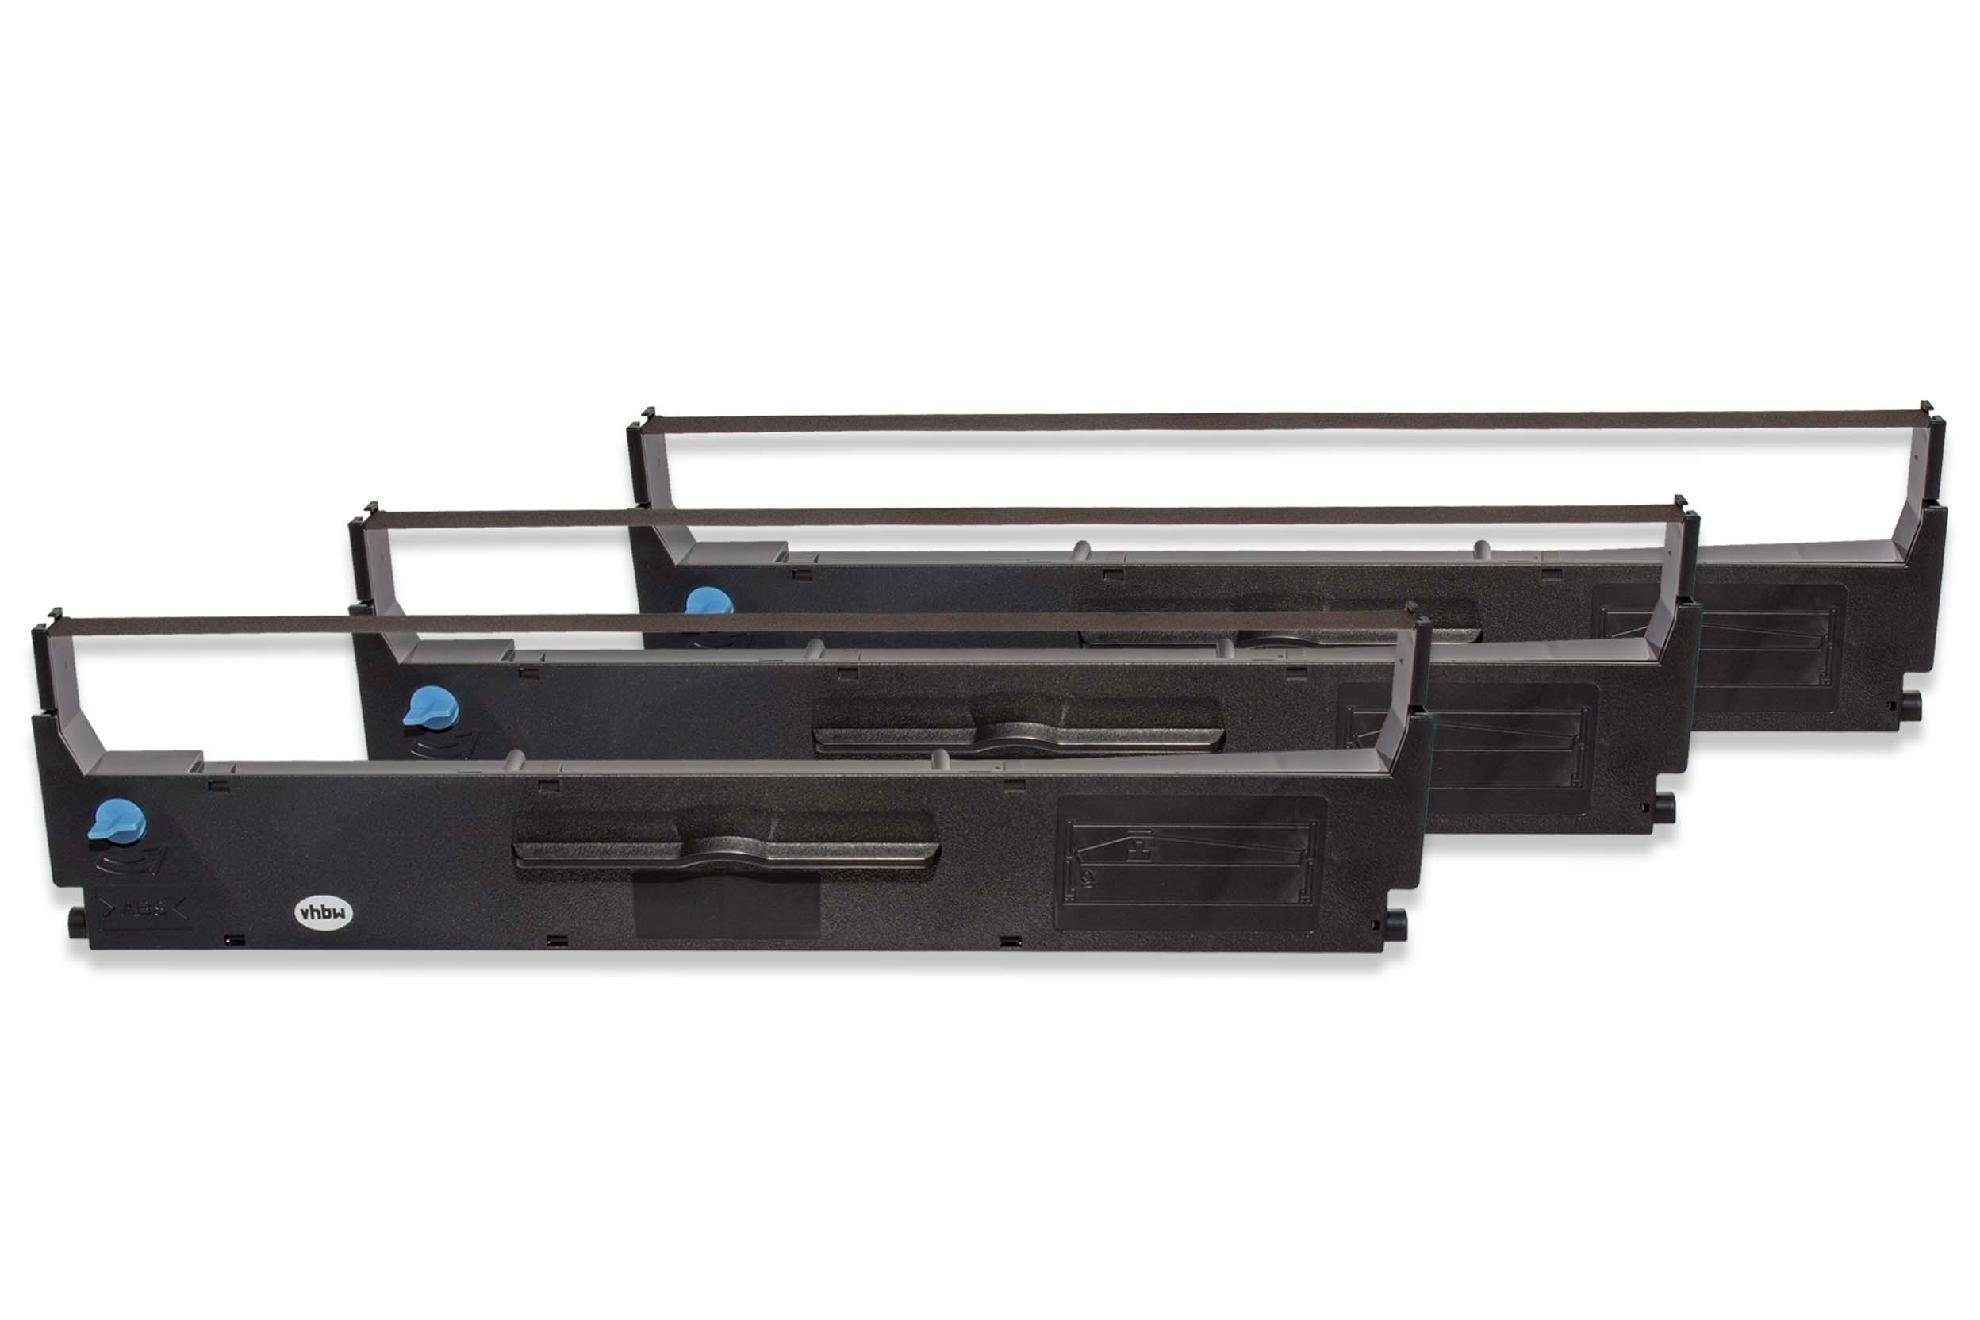 Plus LX LX Drucker für 350, 400, LX350 passend LX300tII, Kopierer II vhbw Epson LX-350, & Beschriftungsband, Nadeldrucker 300 Colour, LX